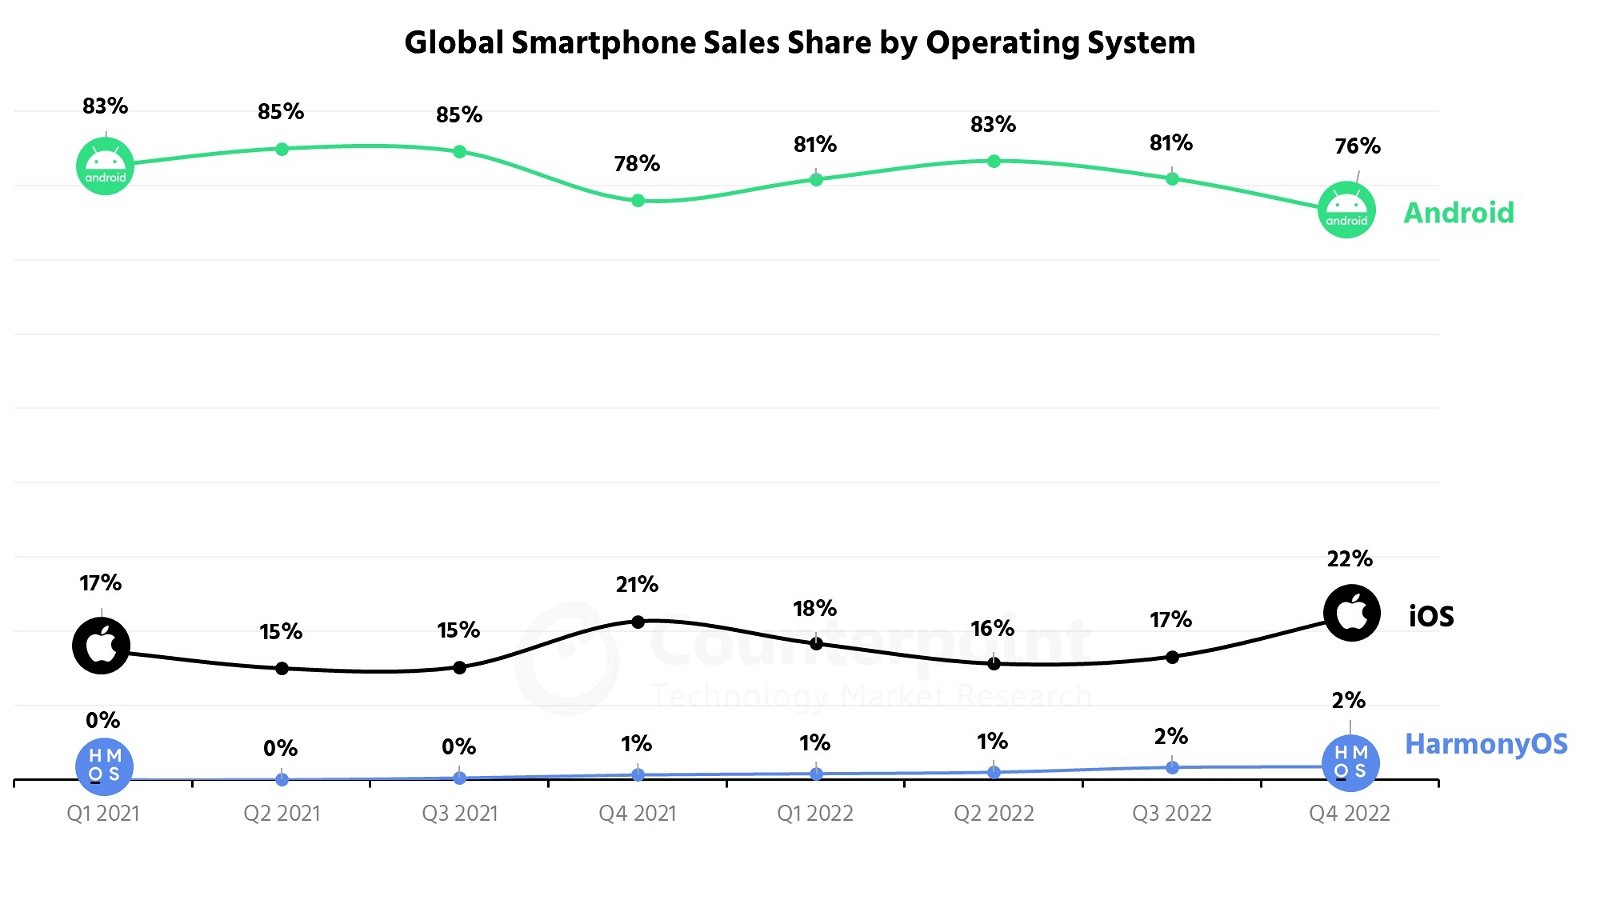 Ventas de smartphones por plataformas, 2022